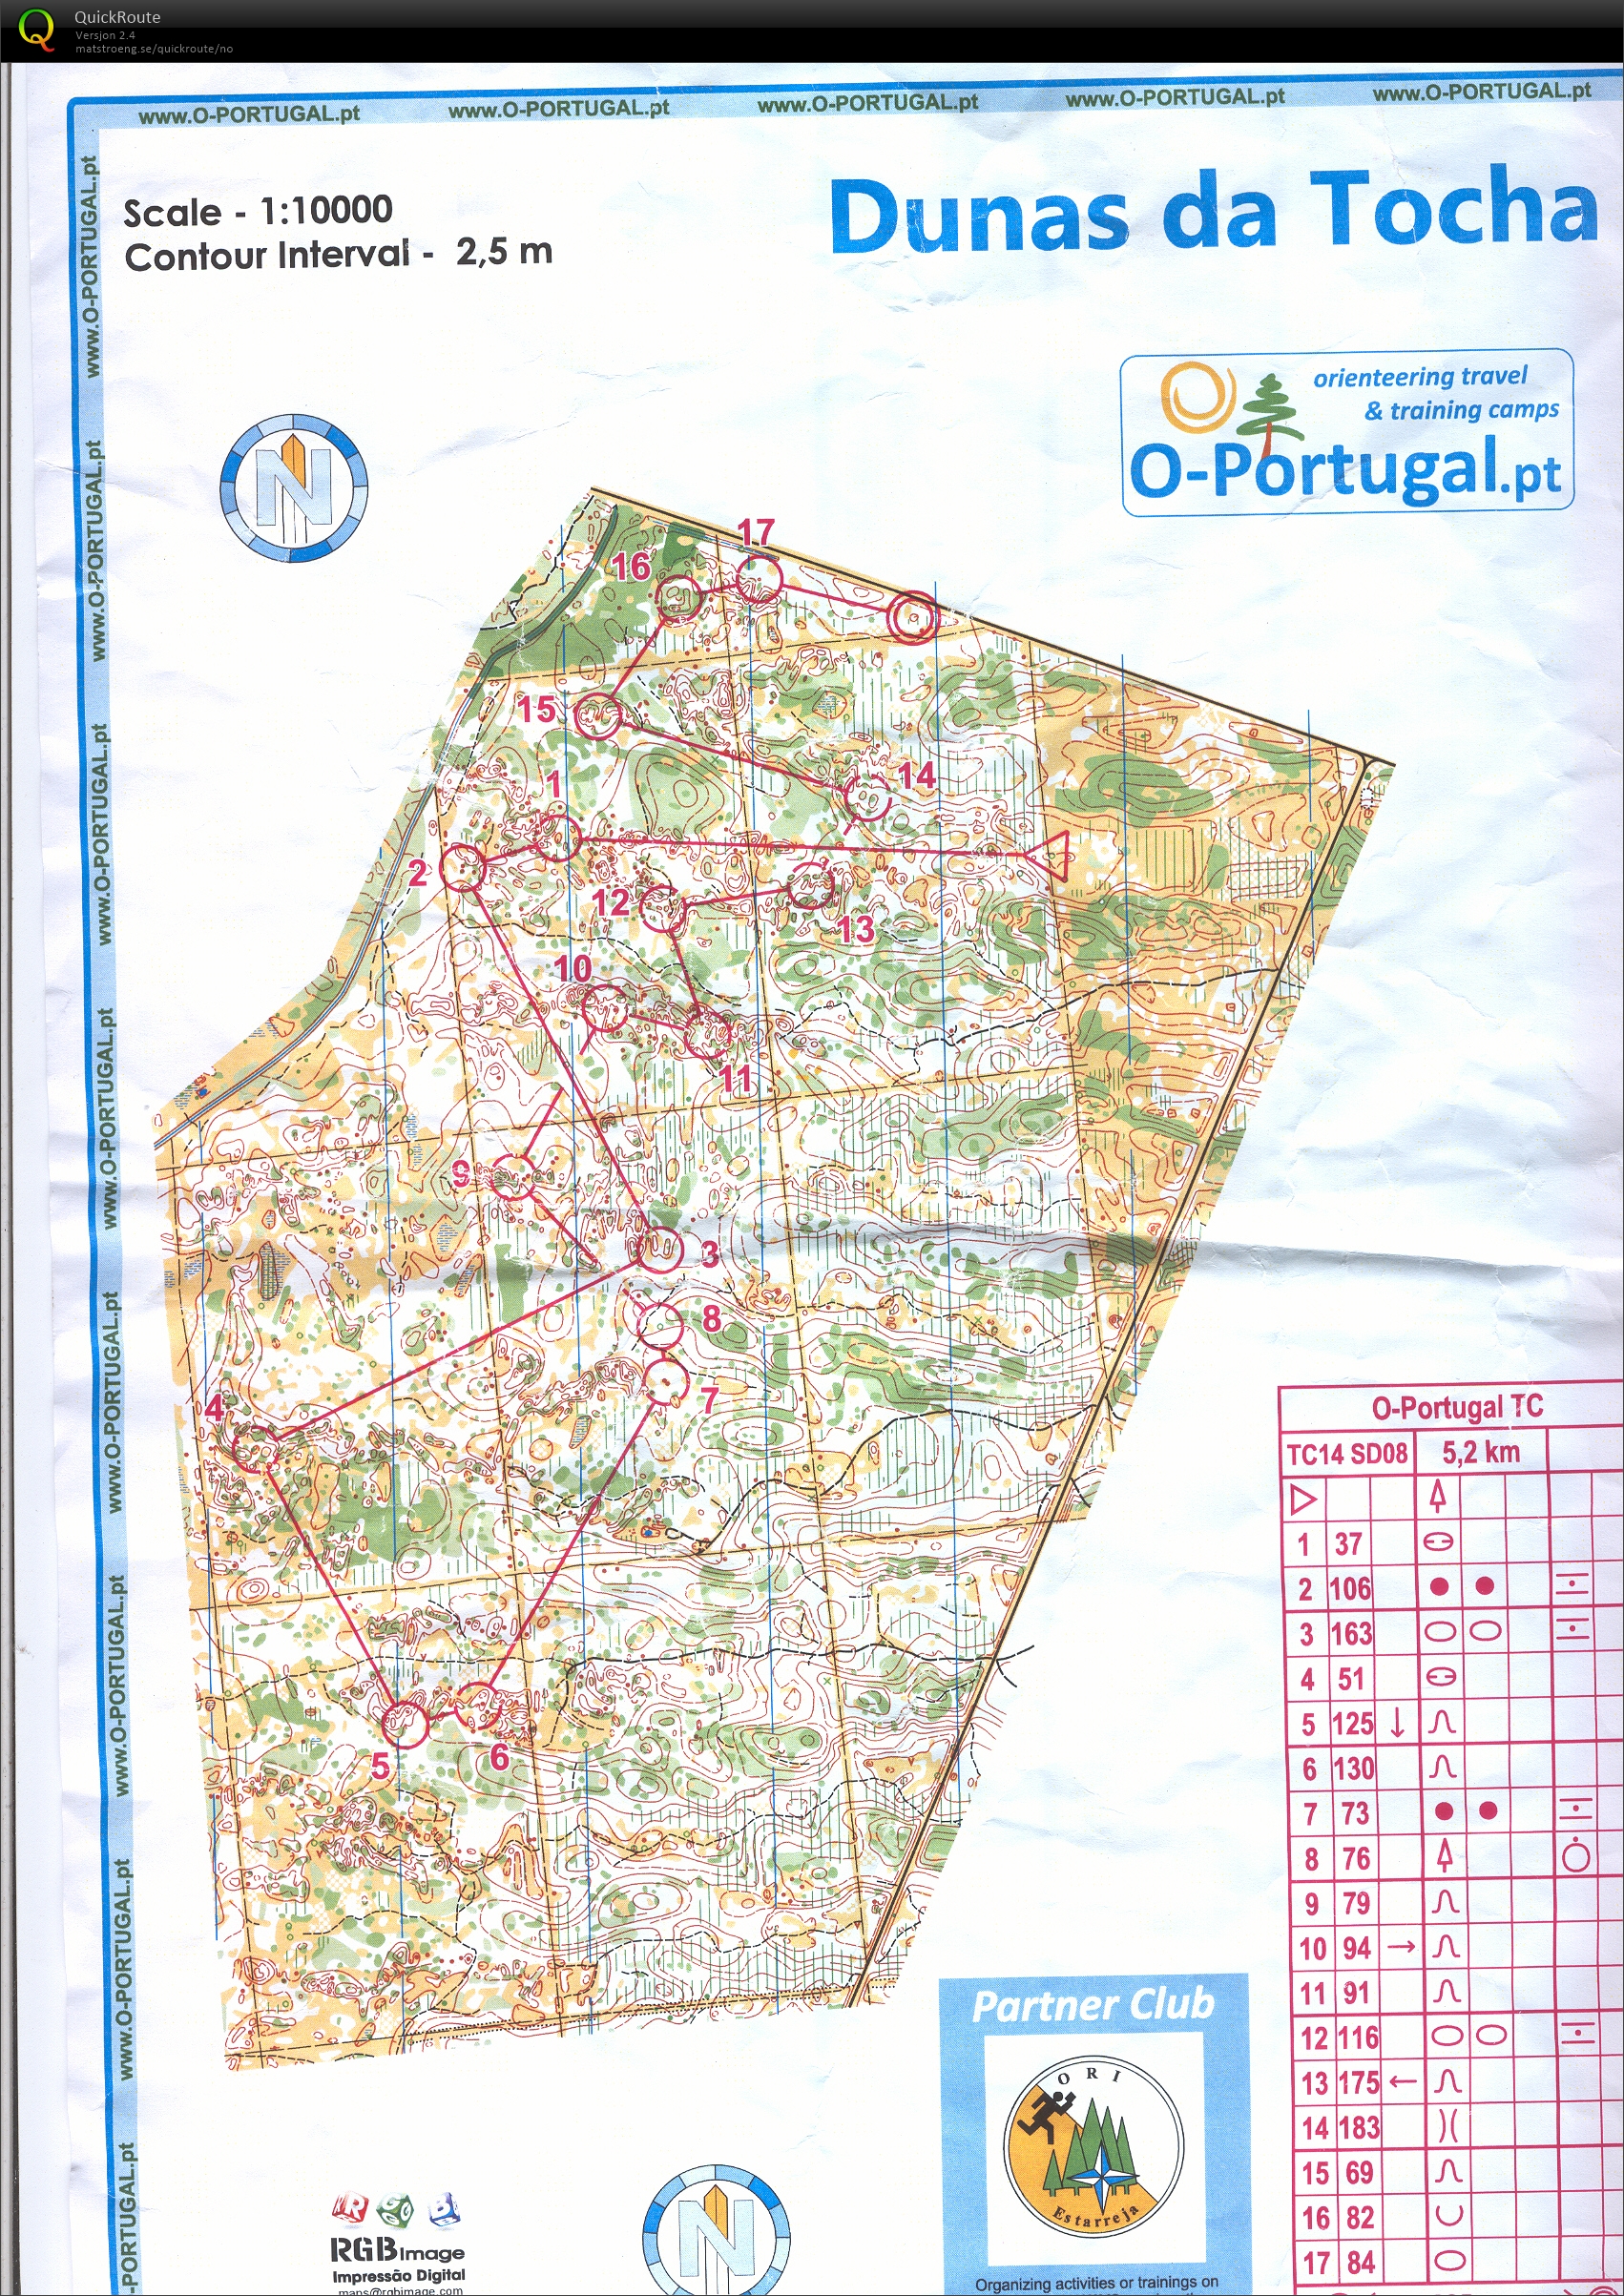 Portugal økt 6 (22-01-2014)